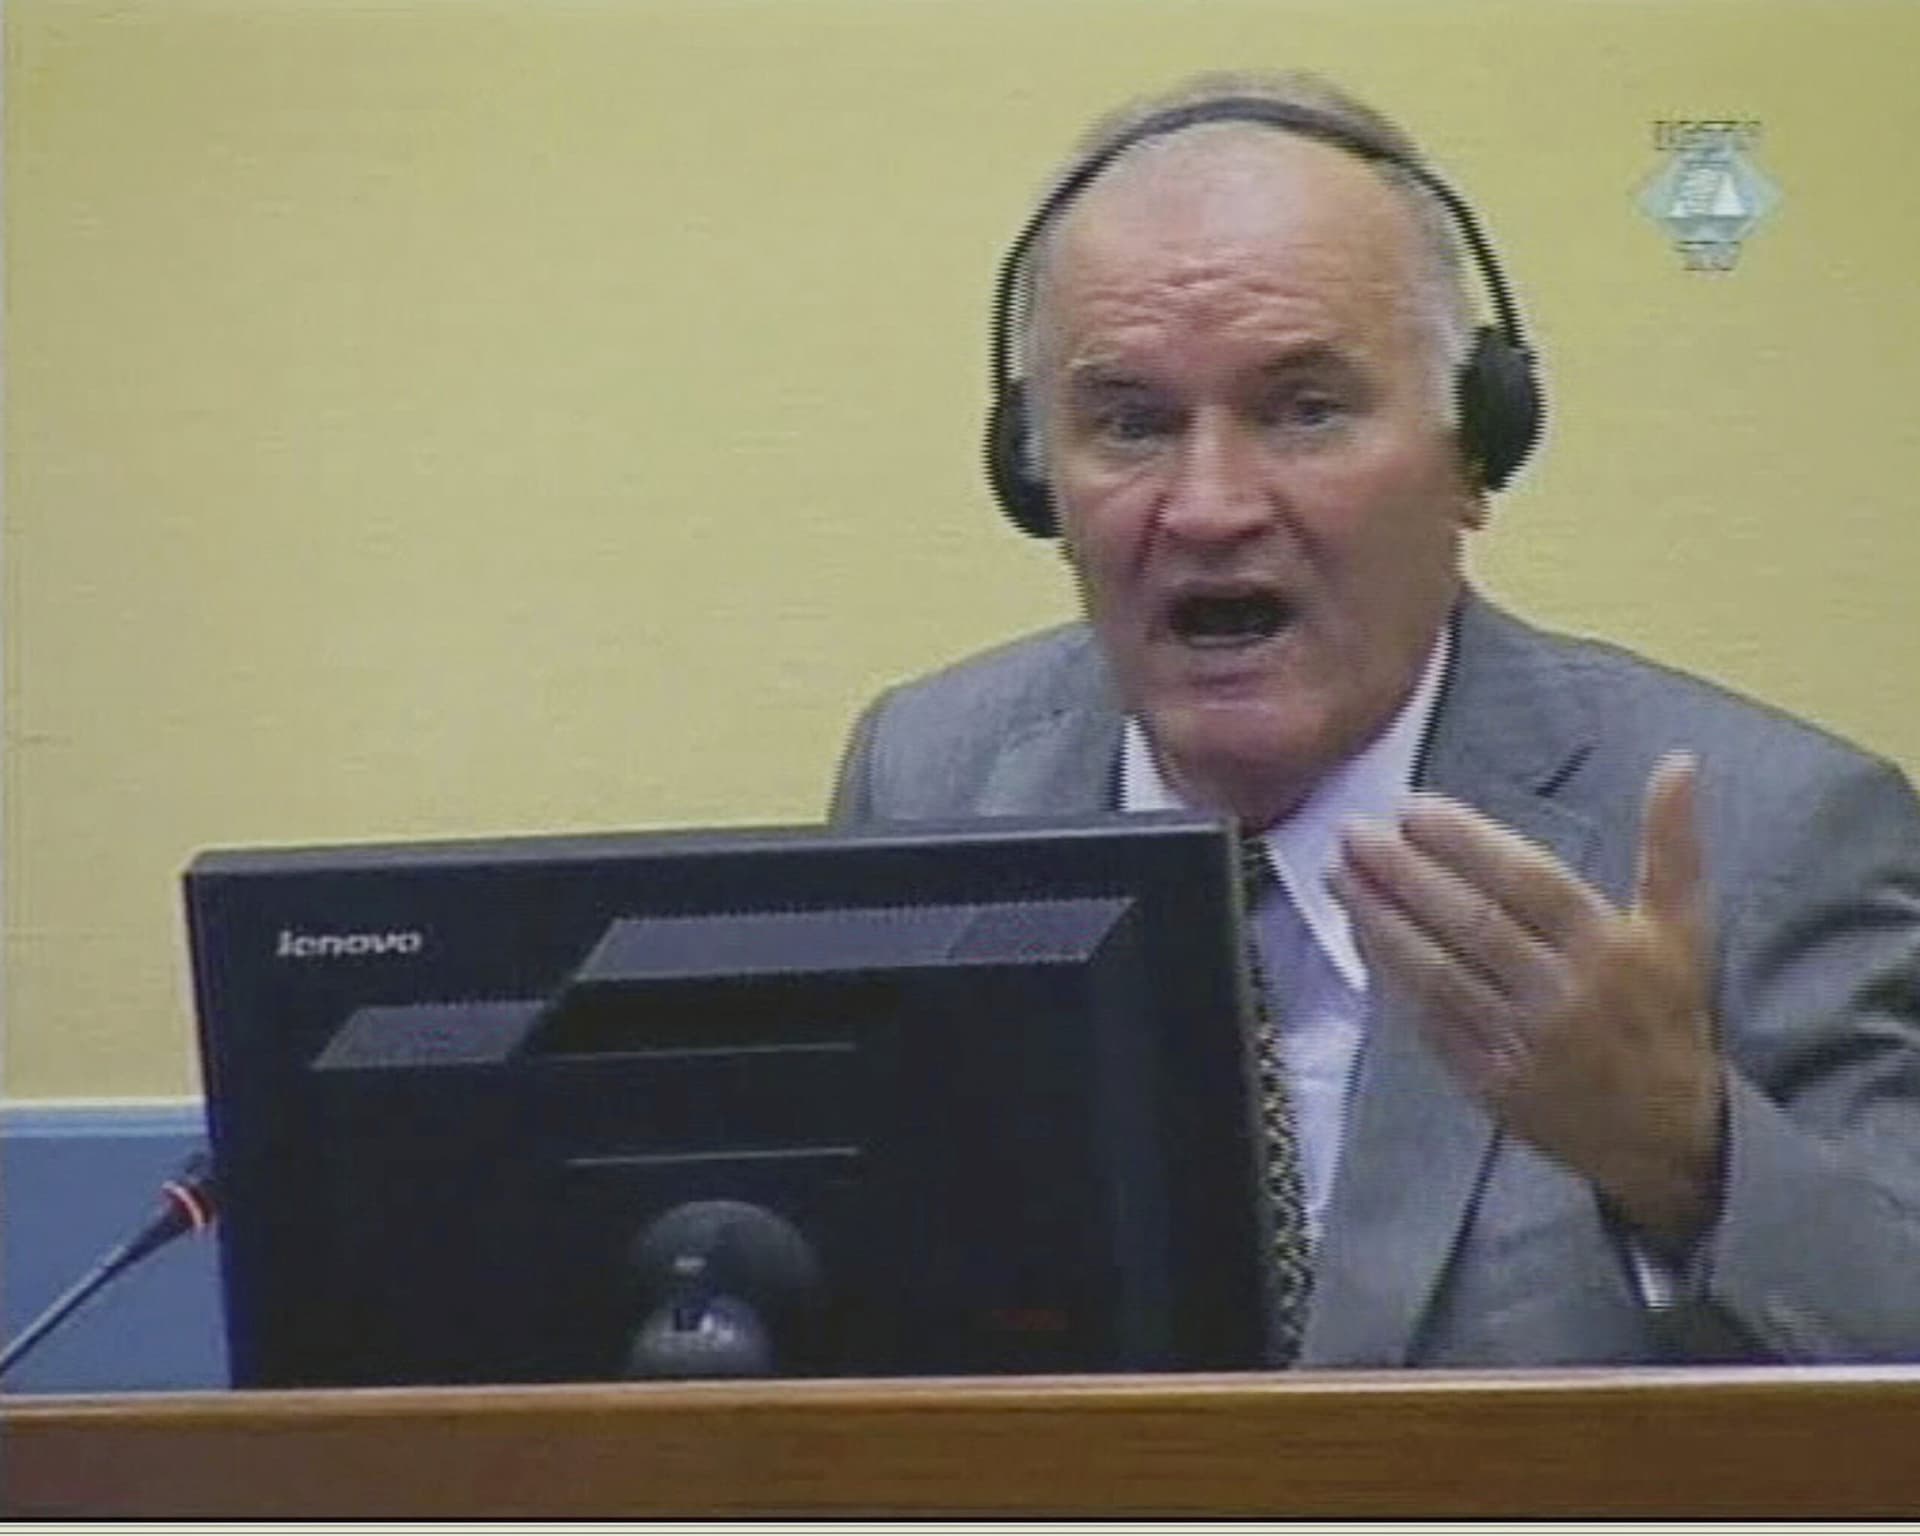 Nem nyilatkozott bűnösségéről Ratko Mladics, a bírák ezt a bűnösség tagadásának tekintik